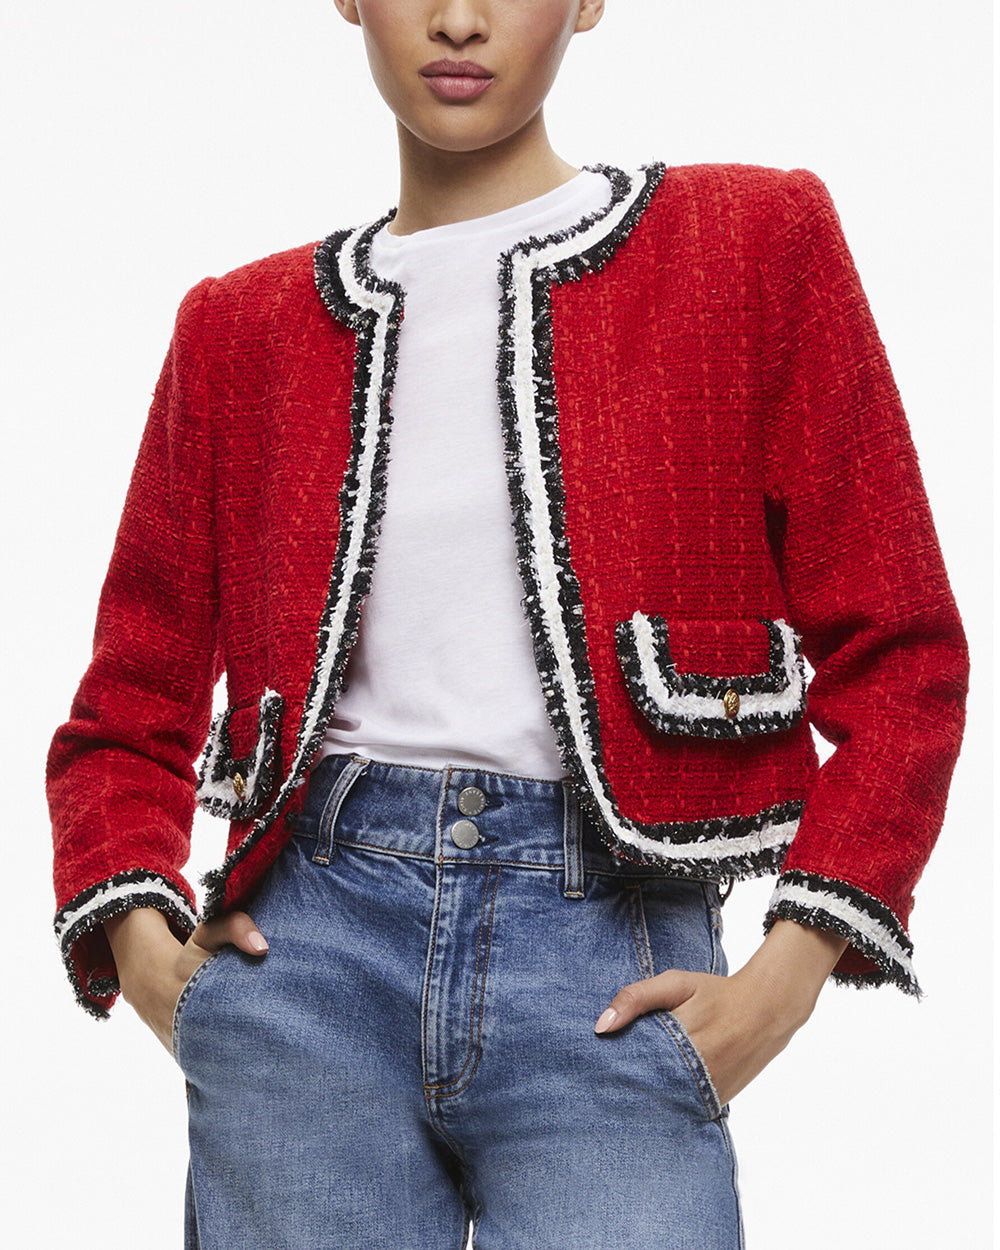 Alice + Olivia Perfect Ruby Red Tweed Landon Crop Jacket – Stanley Korshak